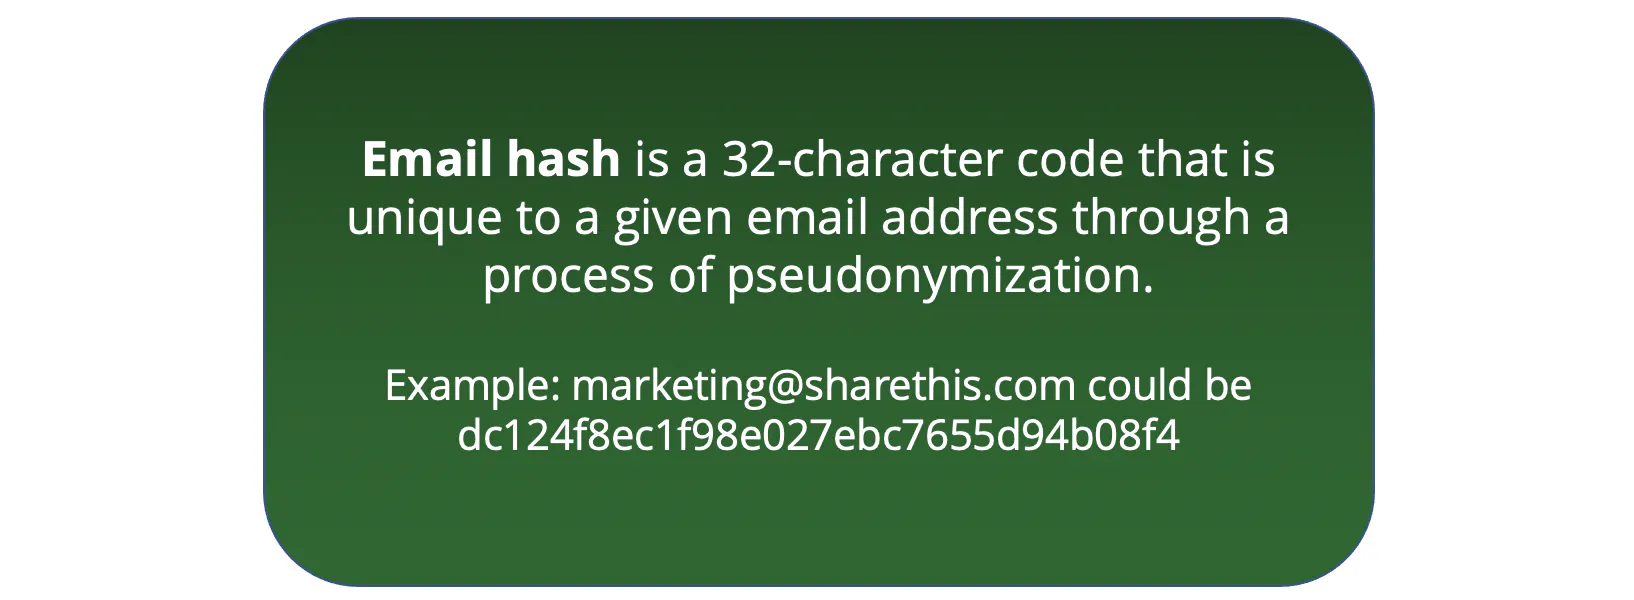 Eine E-Mail-Adresse ist ein 32-stelliger Code, der durch einen Pseudonymisierungsprozess eindeutig einer bestimmten E-Mail-Adresse zugeordnet werden kann.